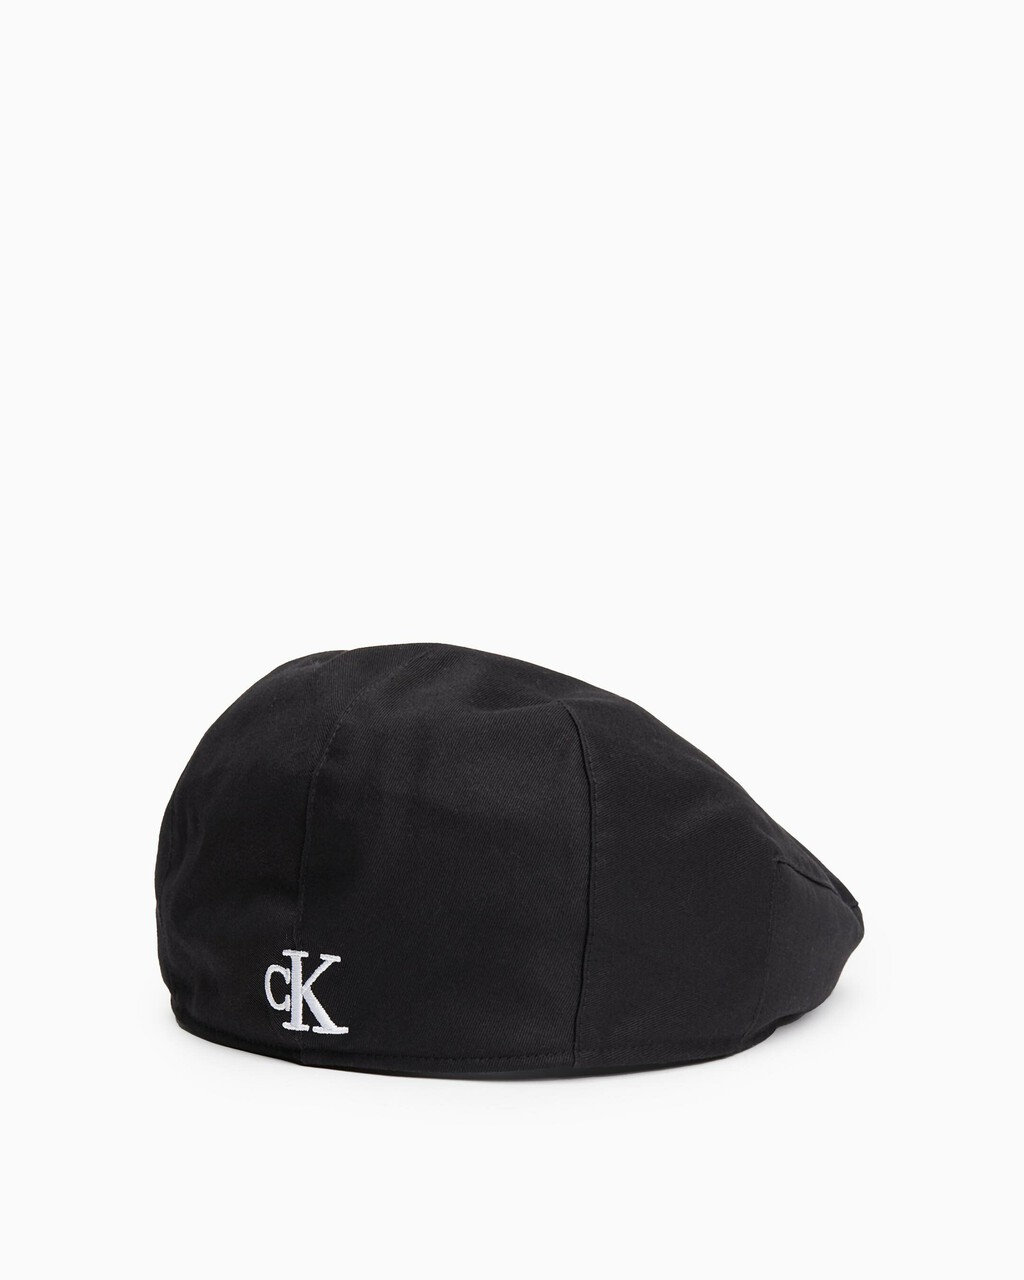 CK 刺繡畫家帽, BLACK, hi-res